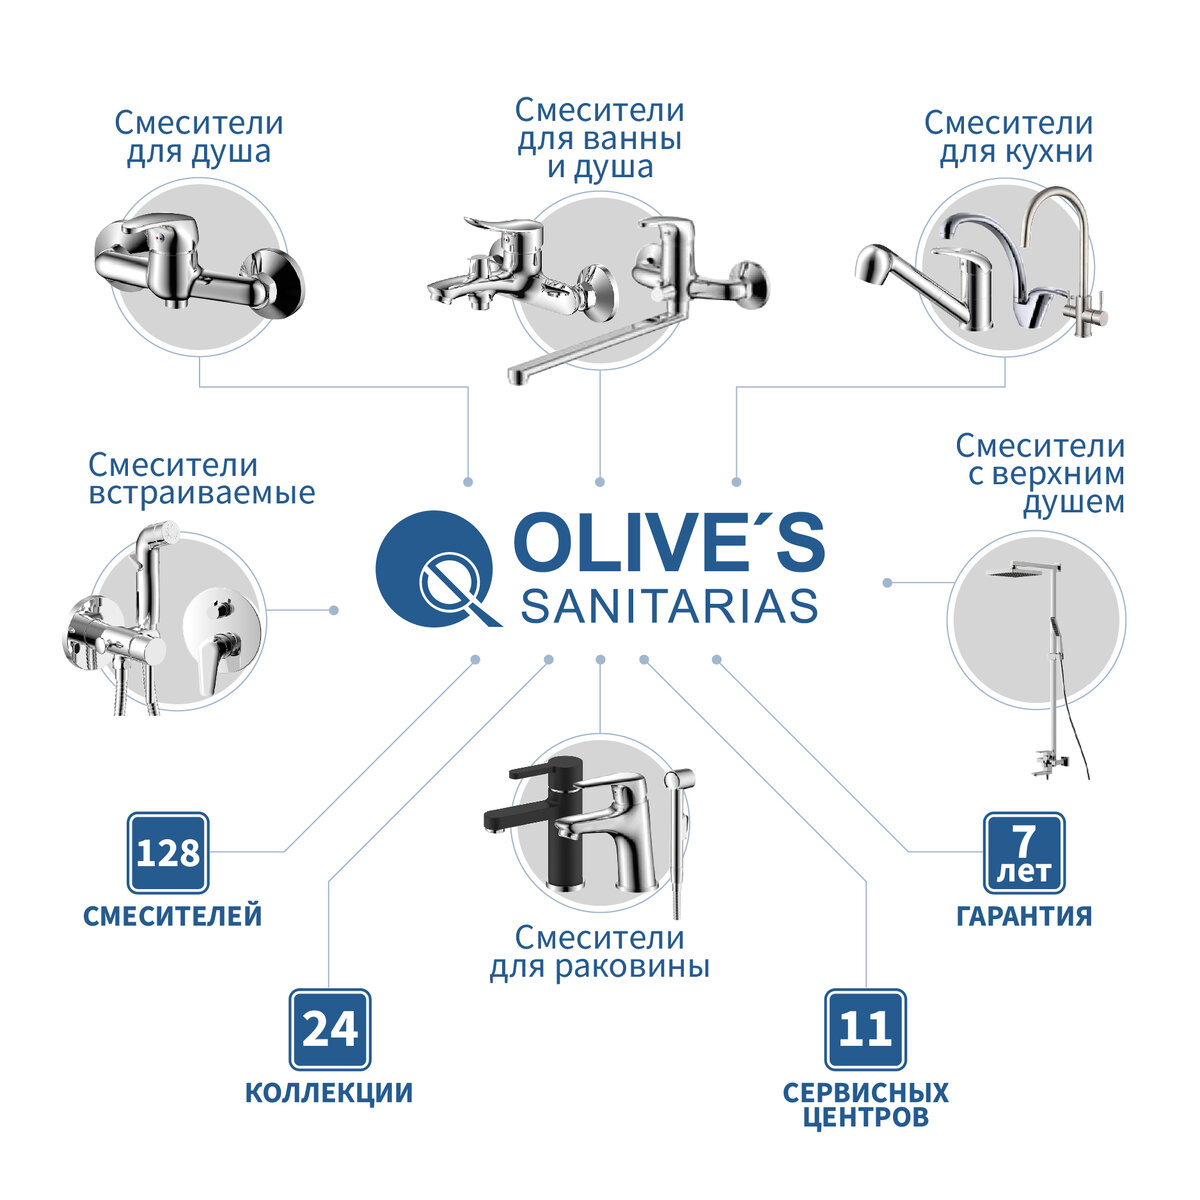 OLIVE’S – стильные, качественные и недорогие смесители, которые сделают каждый ваш день приятнее и уютнее! 10 интересных фактов о смесителях OLIVE’S